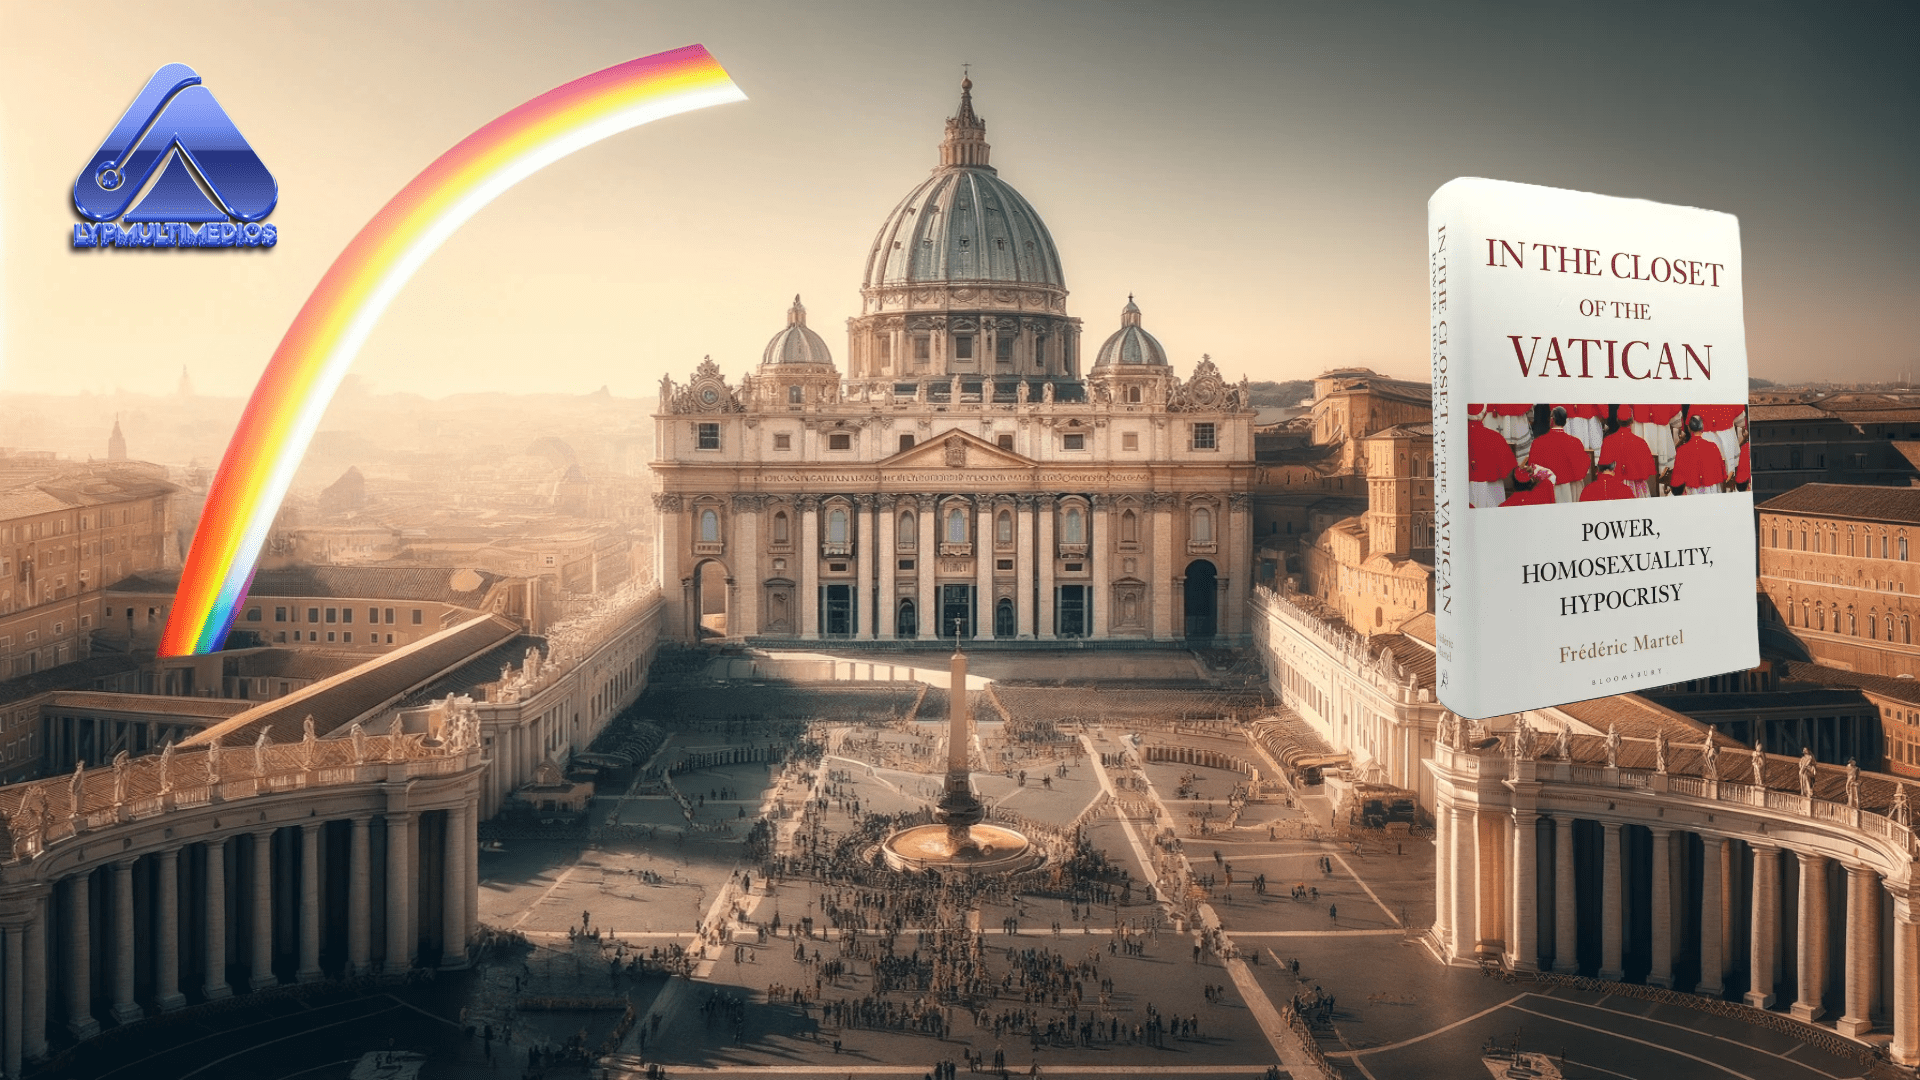 Secretos y Poder en el Vaticano: Revelando la Doble Vida y Homosexualidad en la Santa Sede